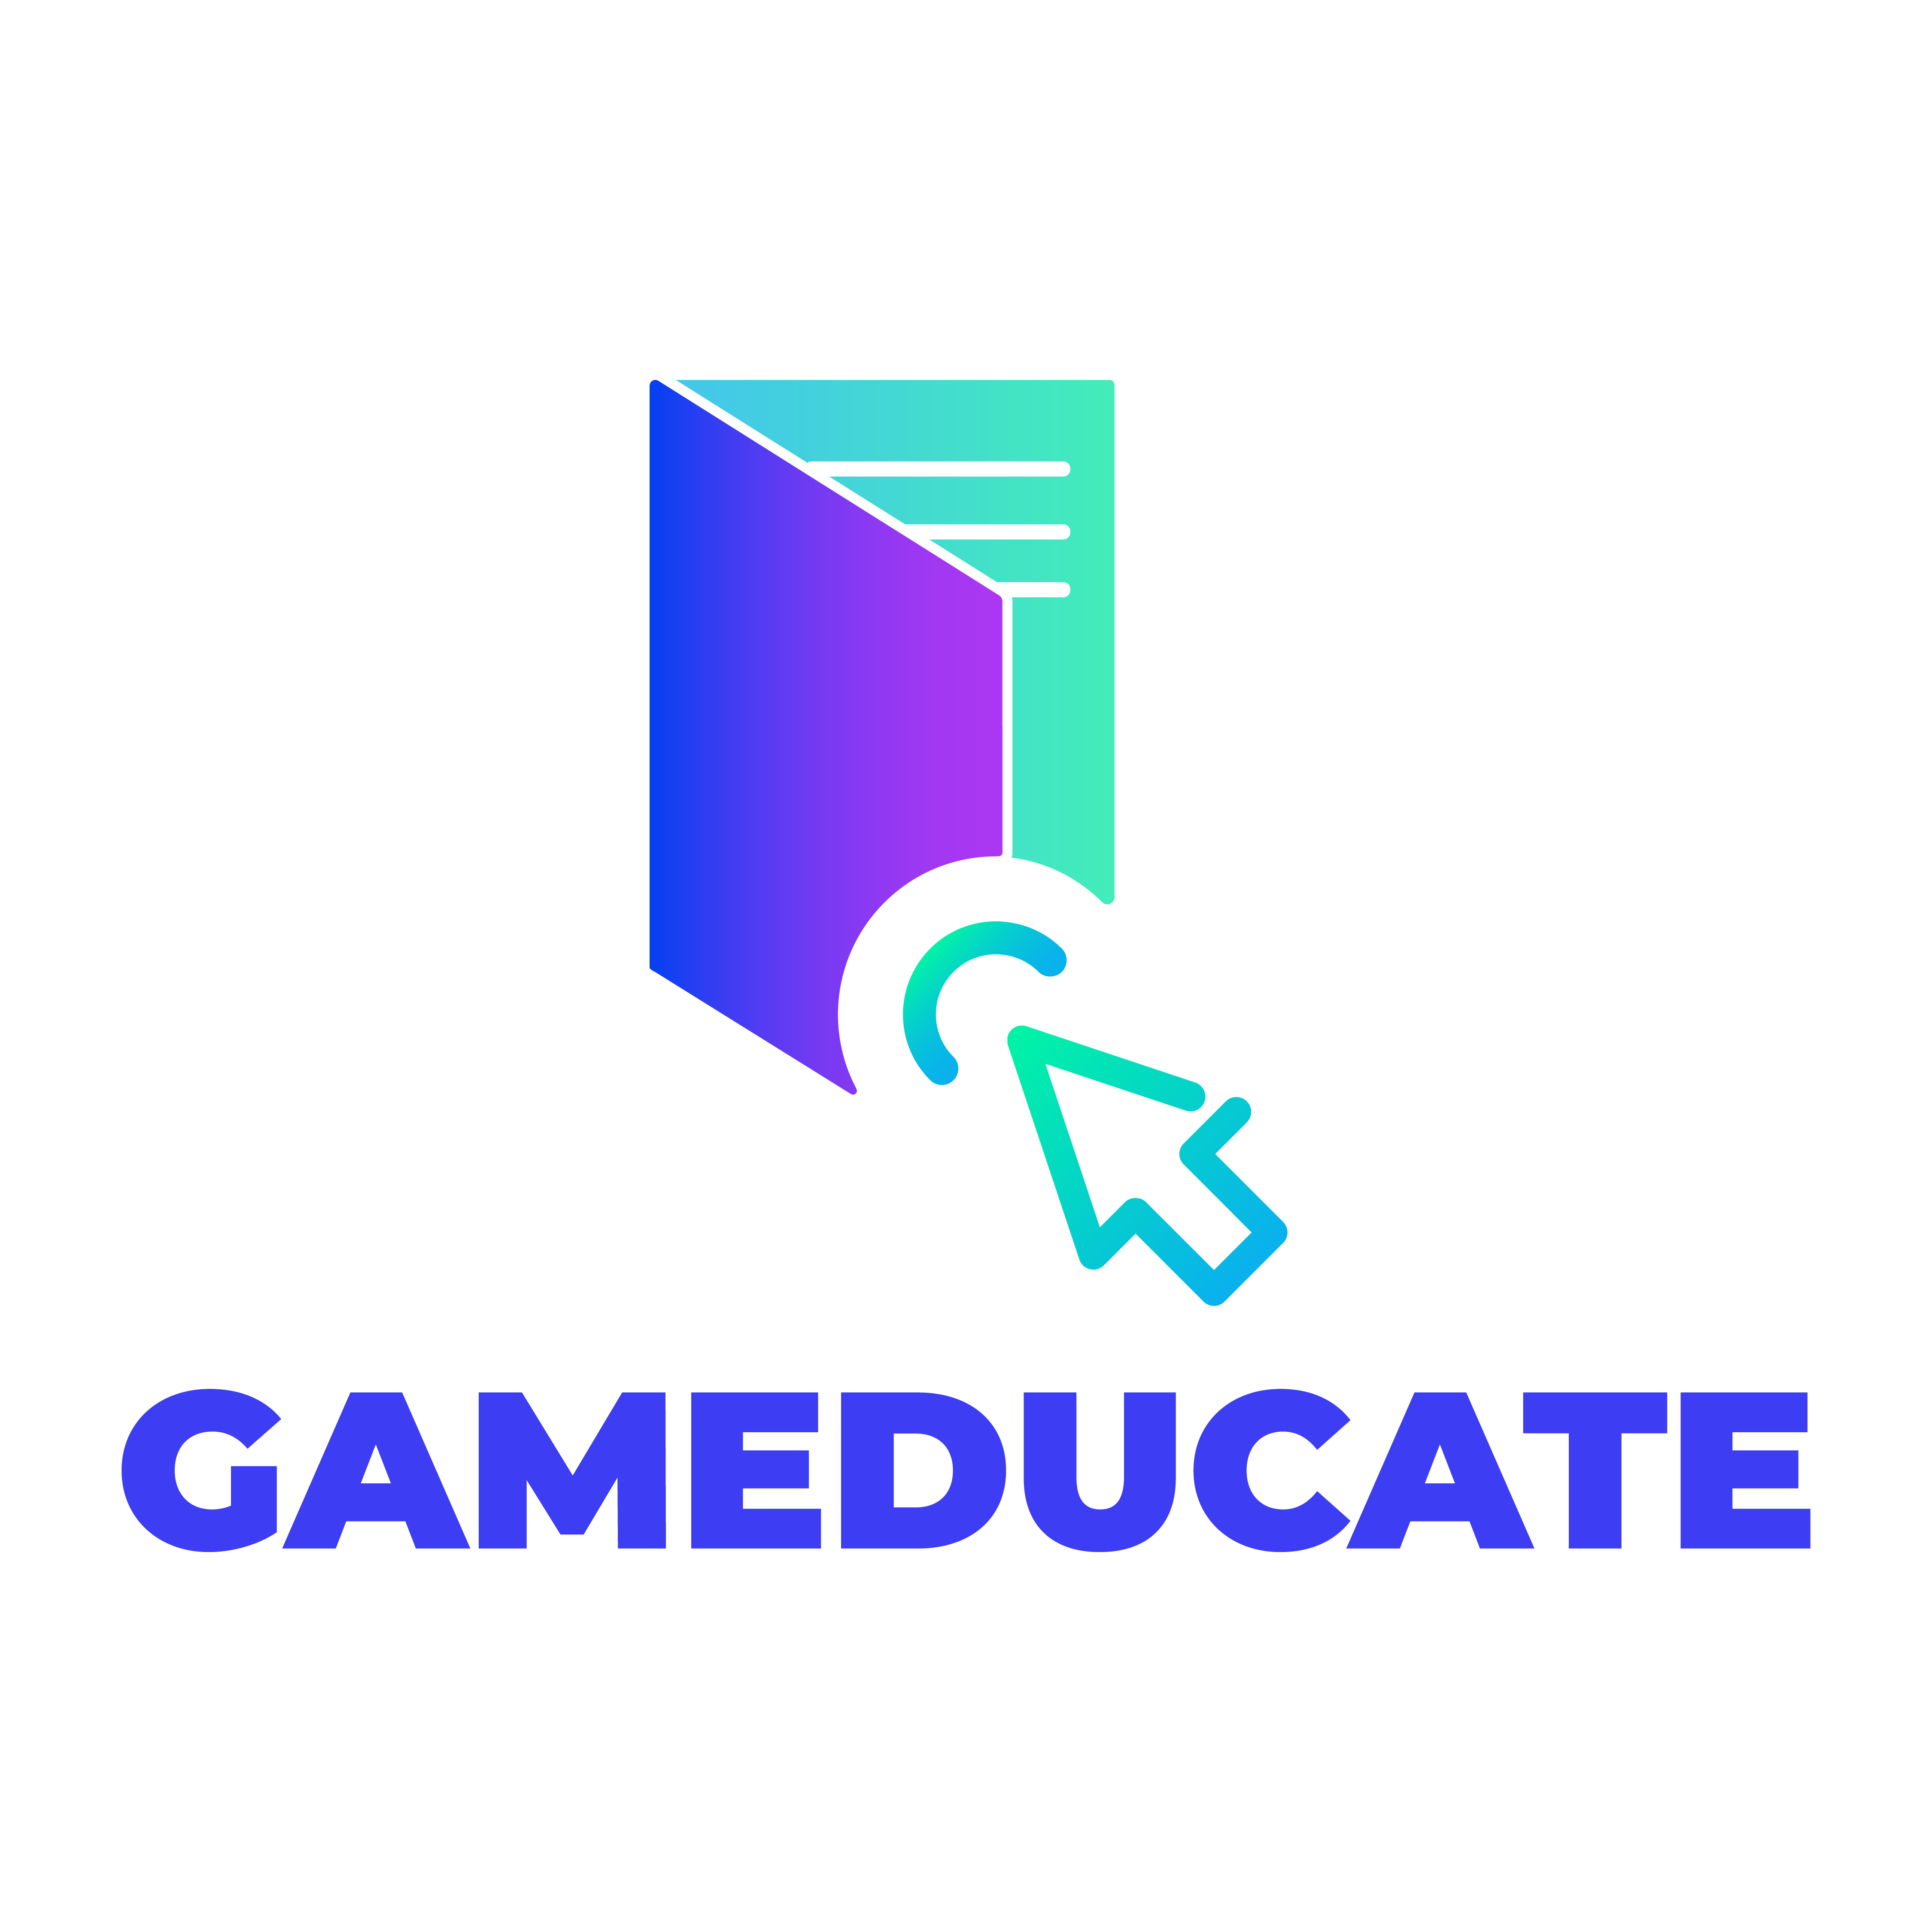 Gameducate